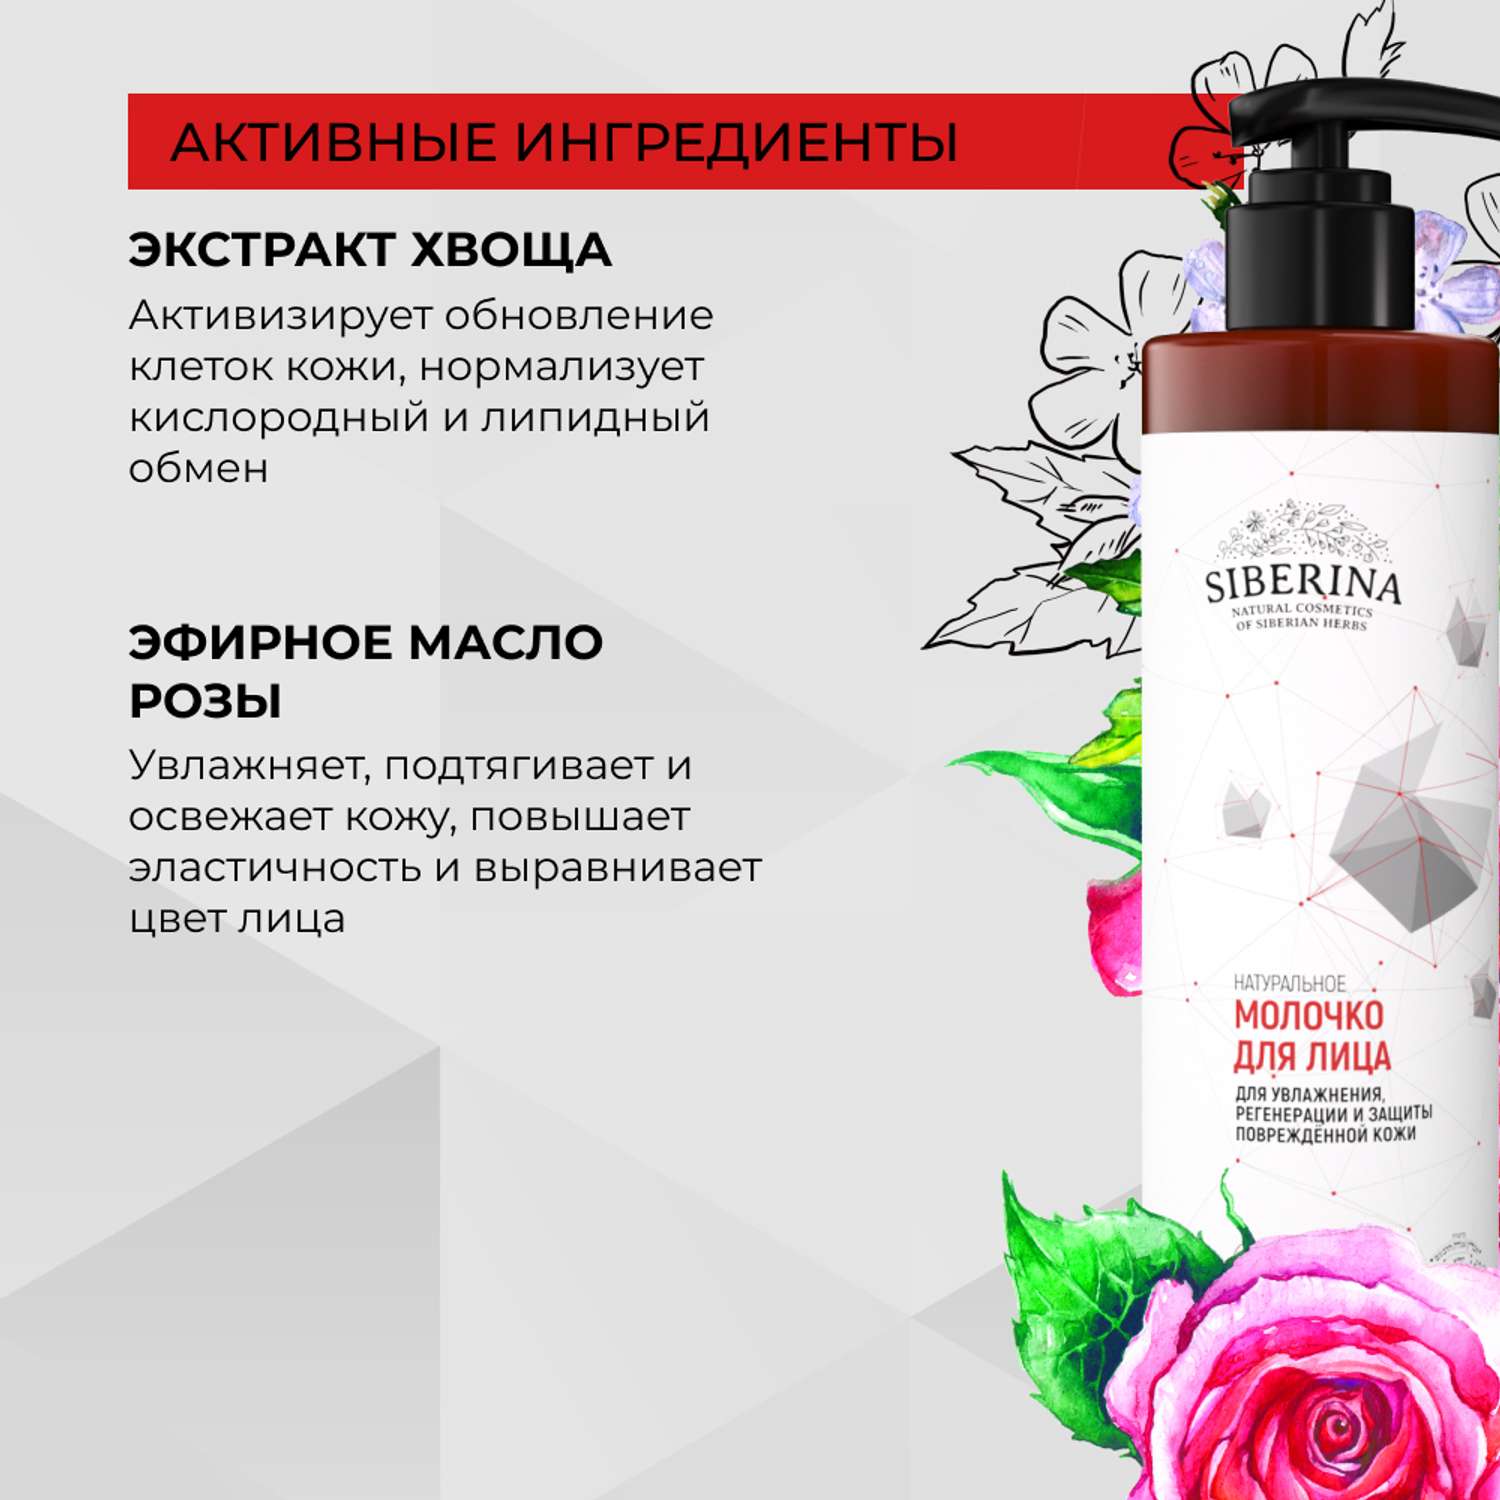 Молочко для лица Siberina натуральное для увлажнения и защиты поврежденной кожи с церамидами 200 мл - фото 5